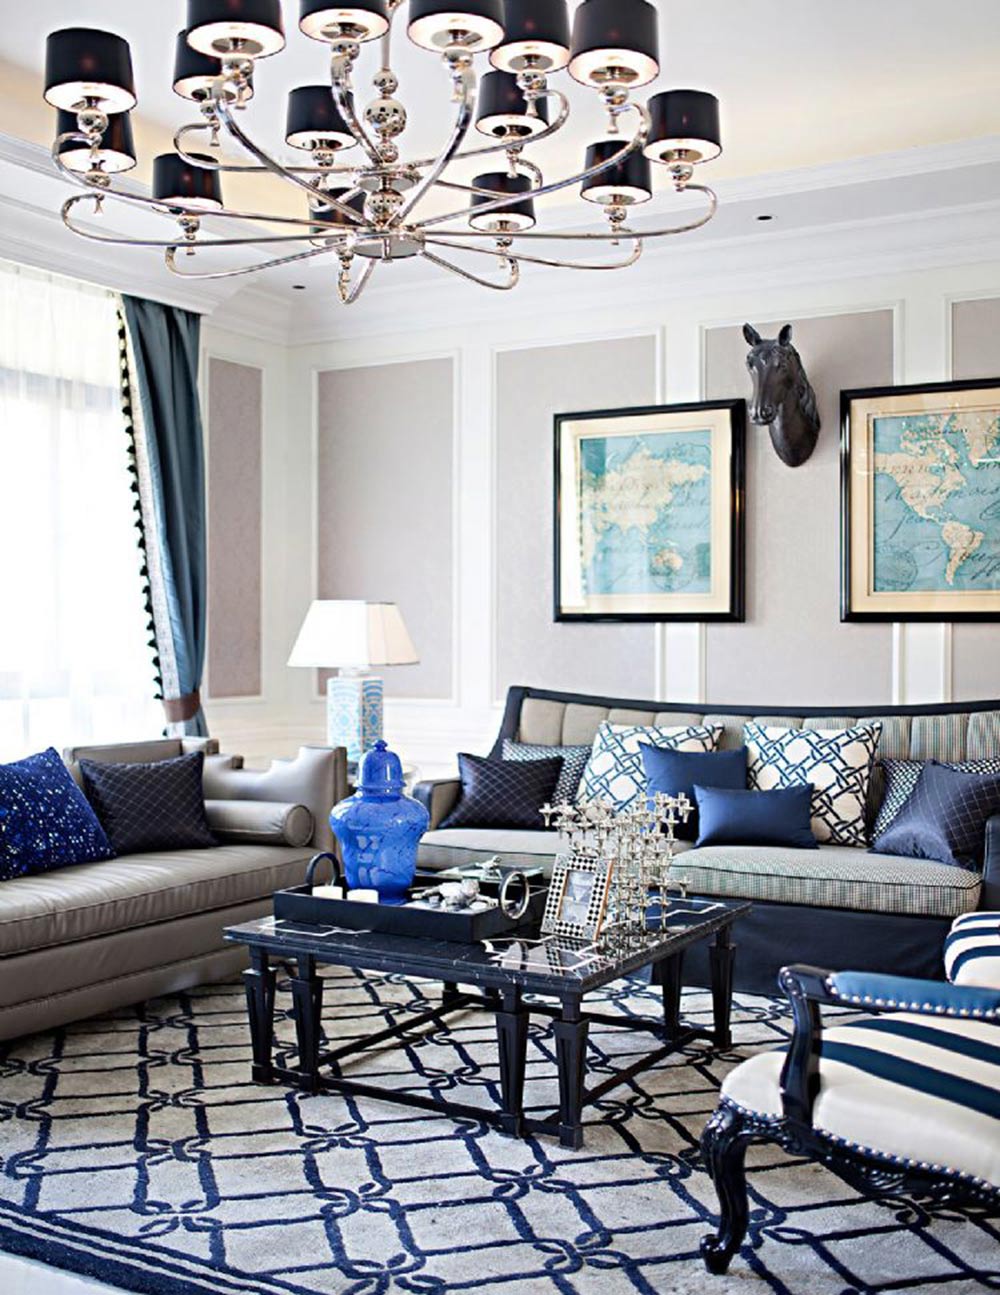 黑色铁艺吊灯悬挂在客厅正中央，使蓝色家具散发出更梦幻美丽的光彩。